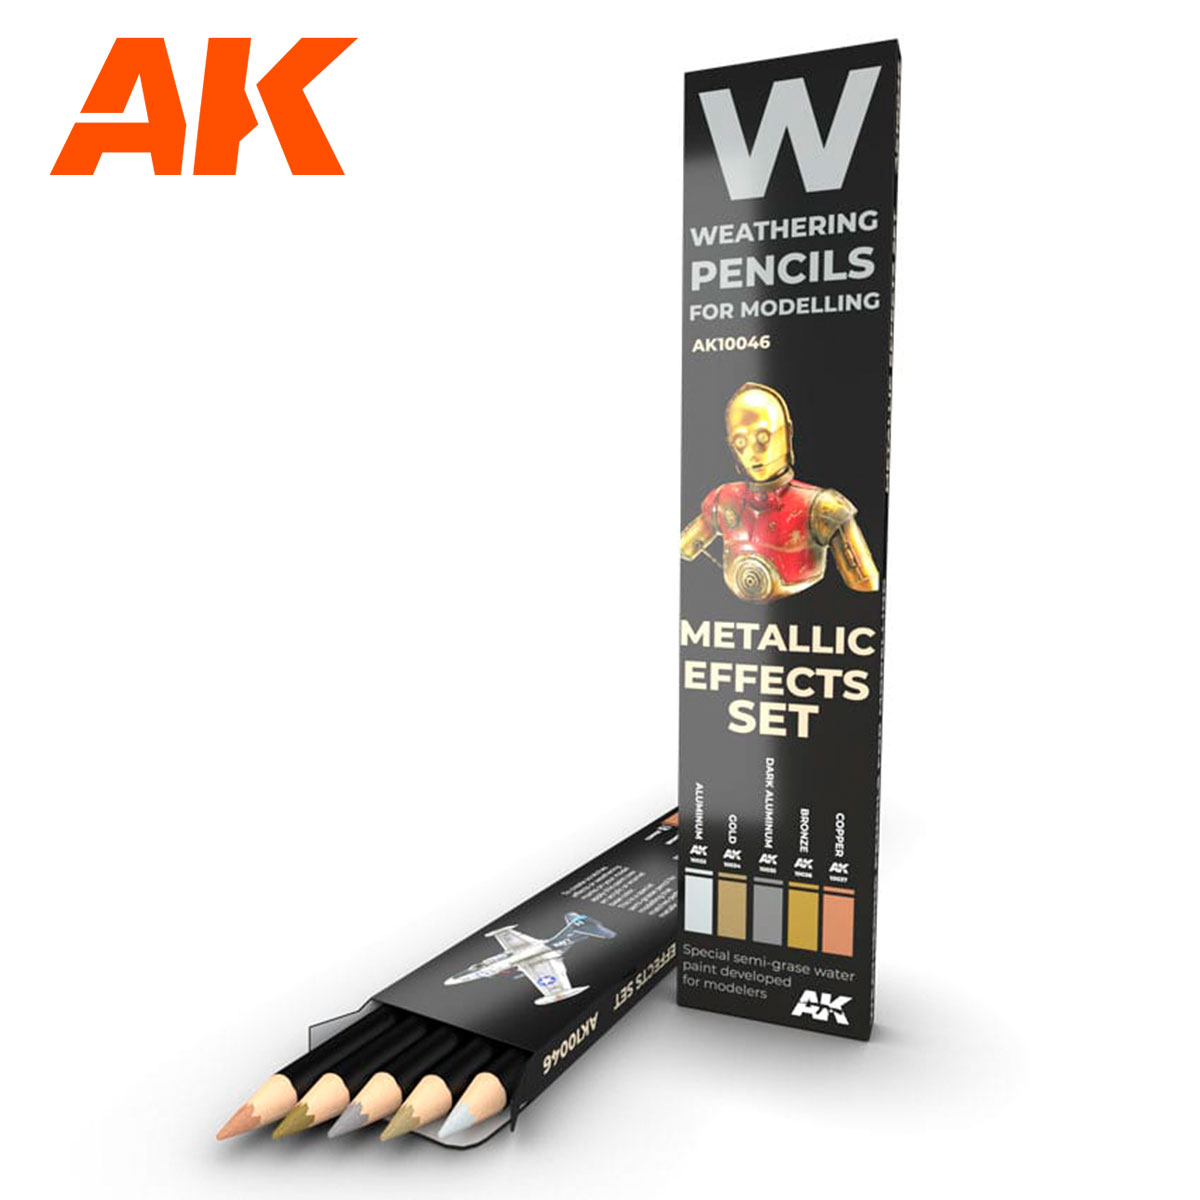 AK Interactive 3G METALLICS Metal Set #AK-11608